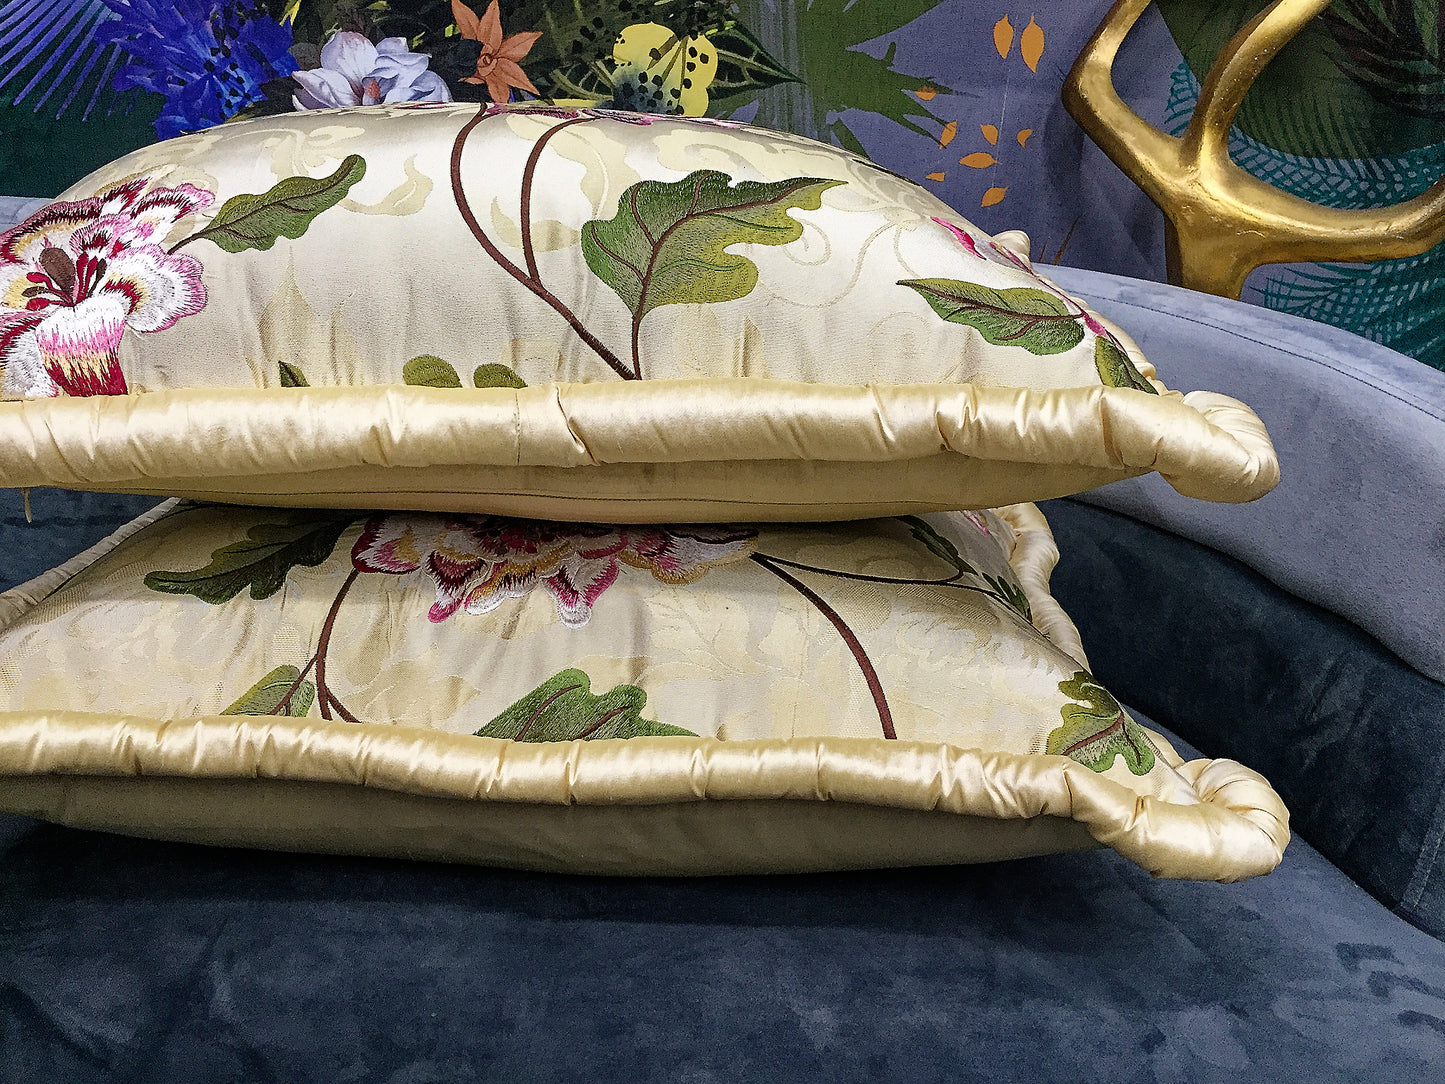 Luxury cushion "Flowers of Glamour"